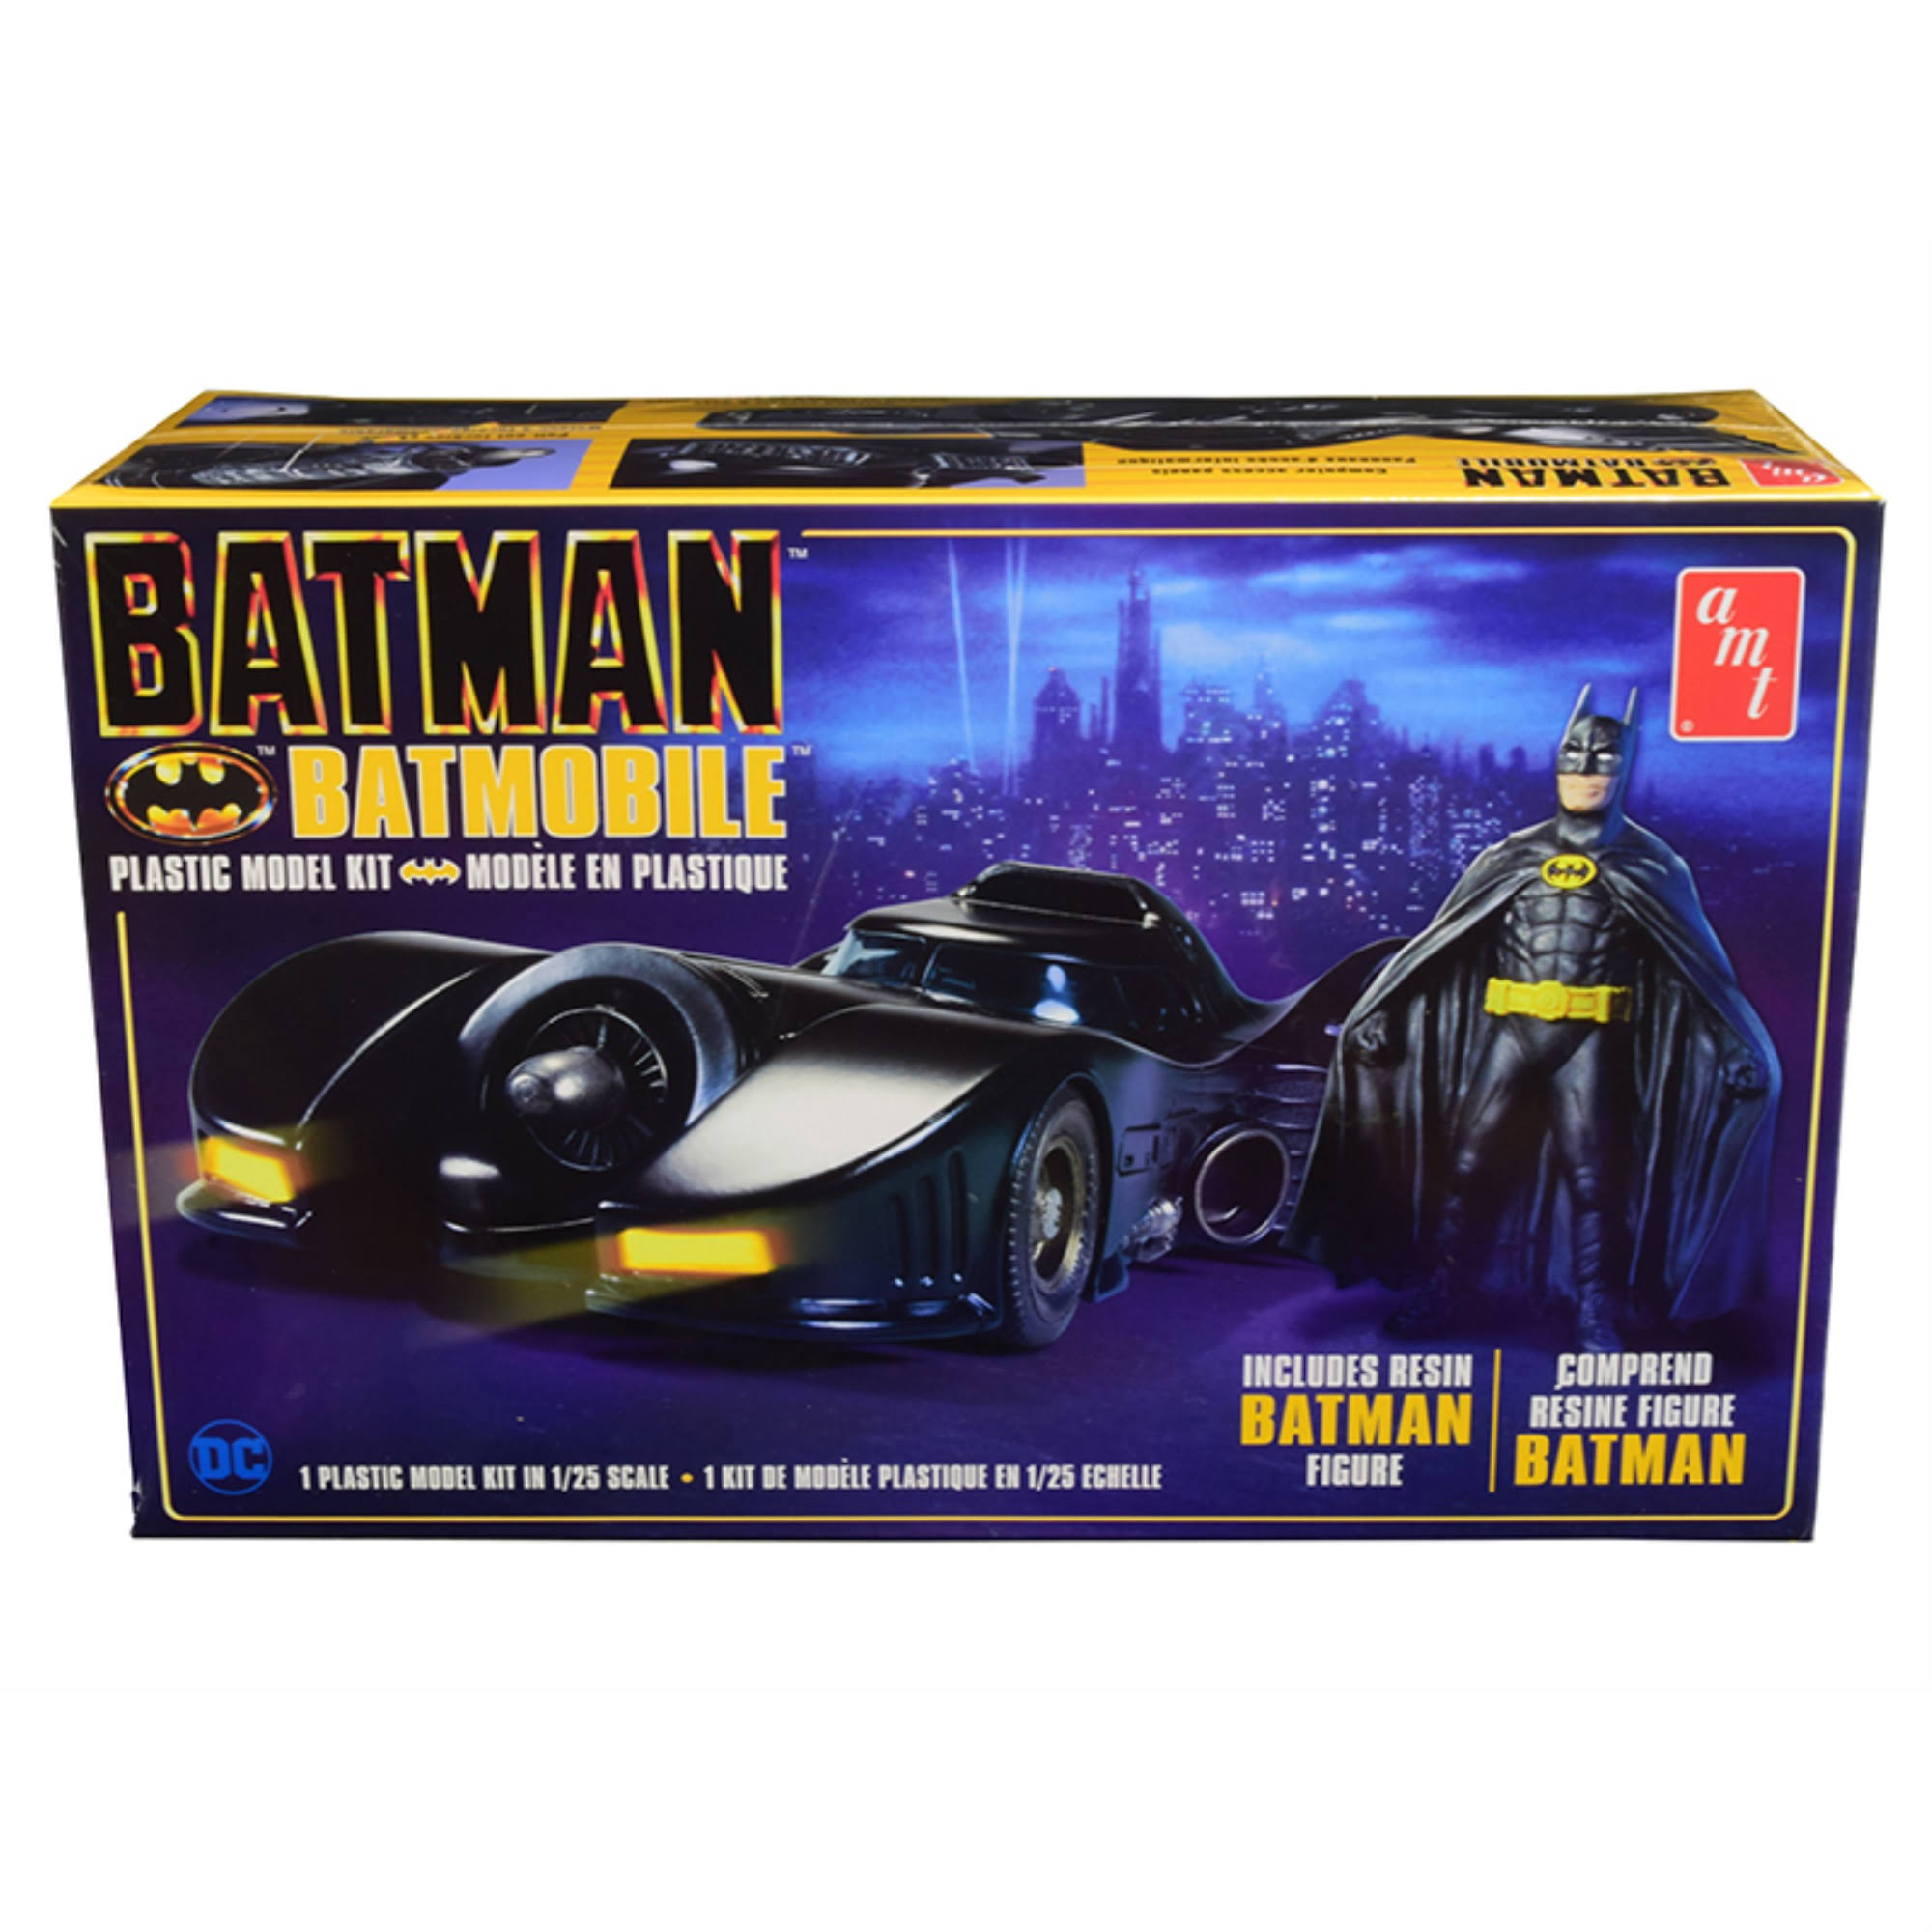 Batman Batmobile + Resin Batman Figure - Scale 1:25